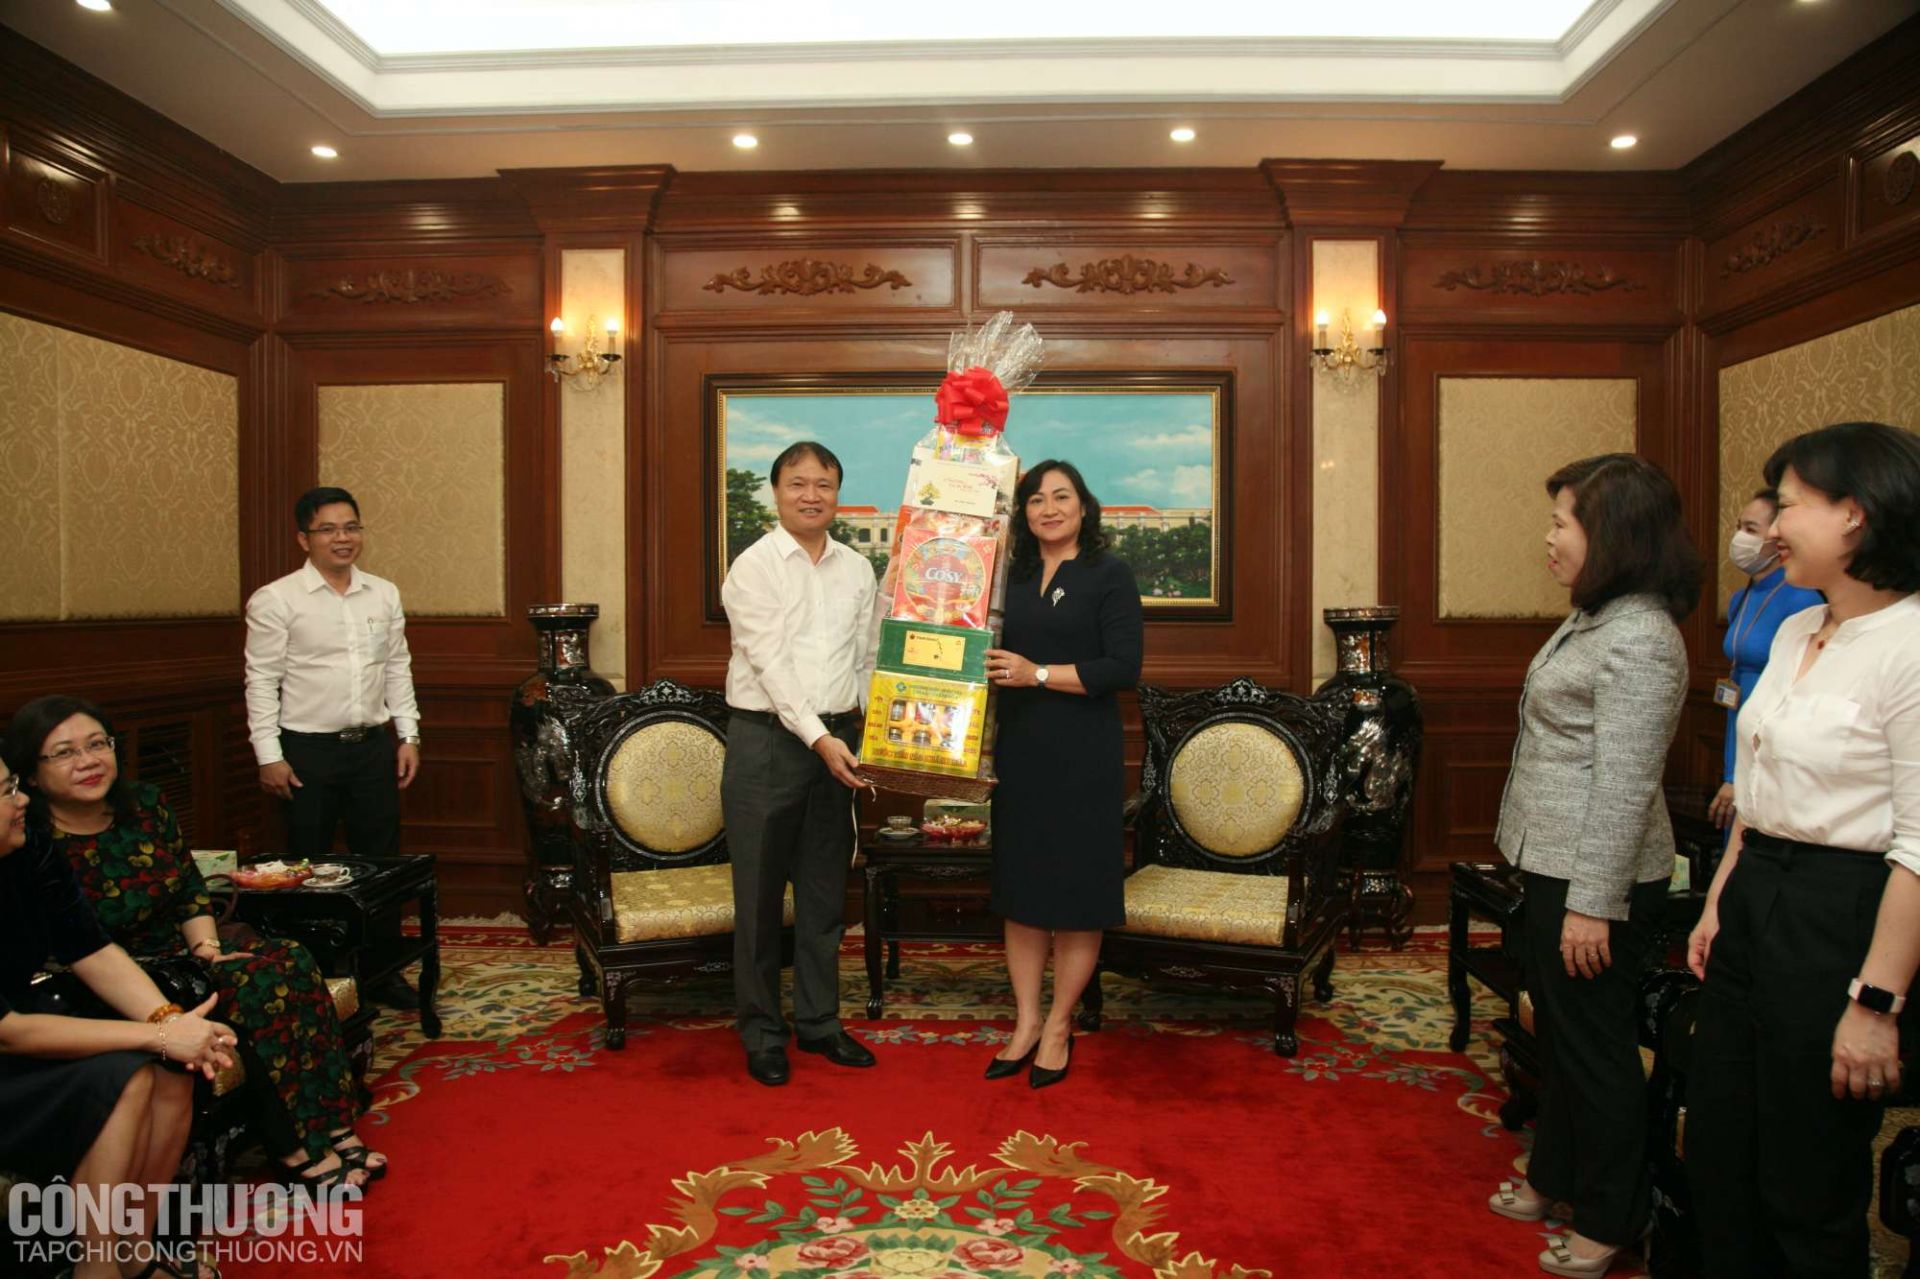 Lãnh đạo Bộ Công Thương cùng lãnh đạo UBND TP. Hồ Chí Minh trao quà và cảm ơn vì sự phối hợp tích cực trong những năm vừa qua